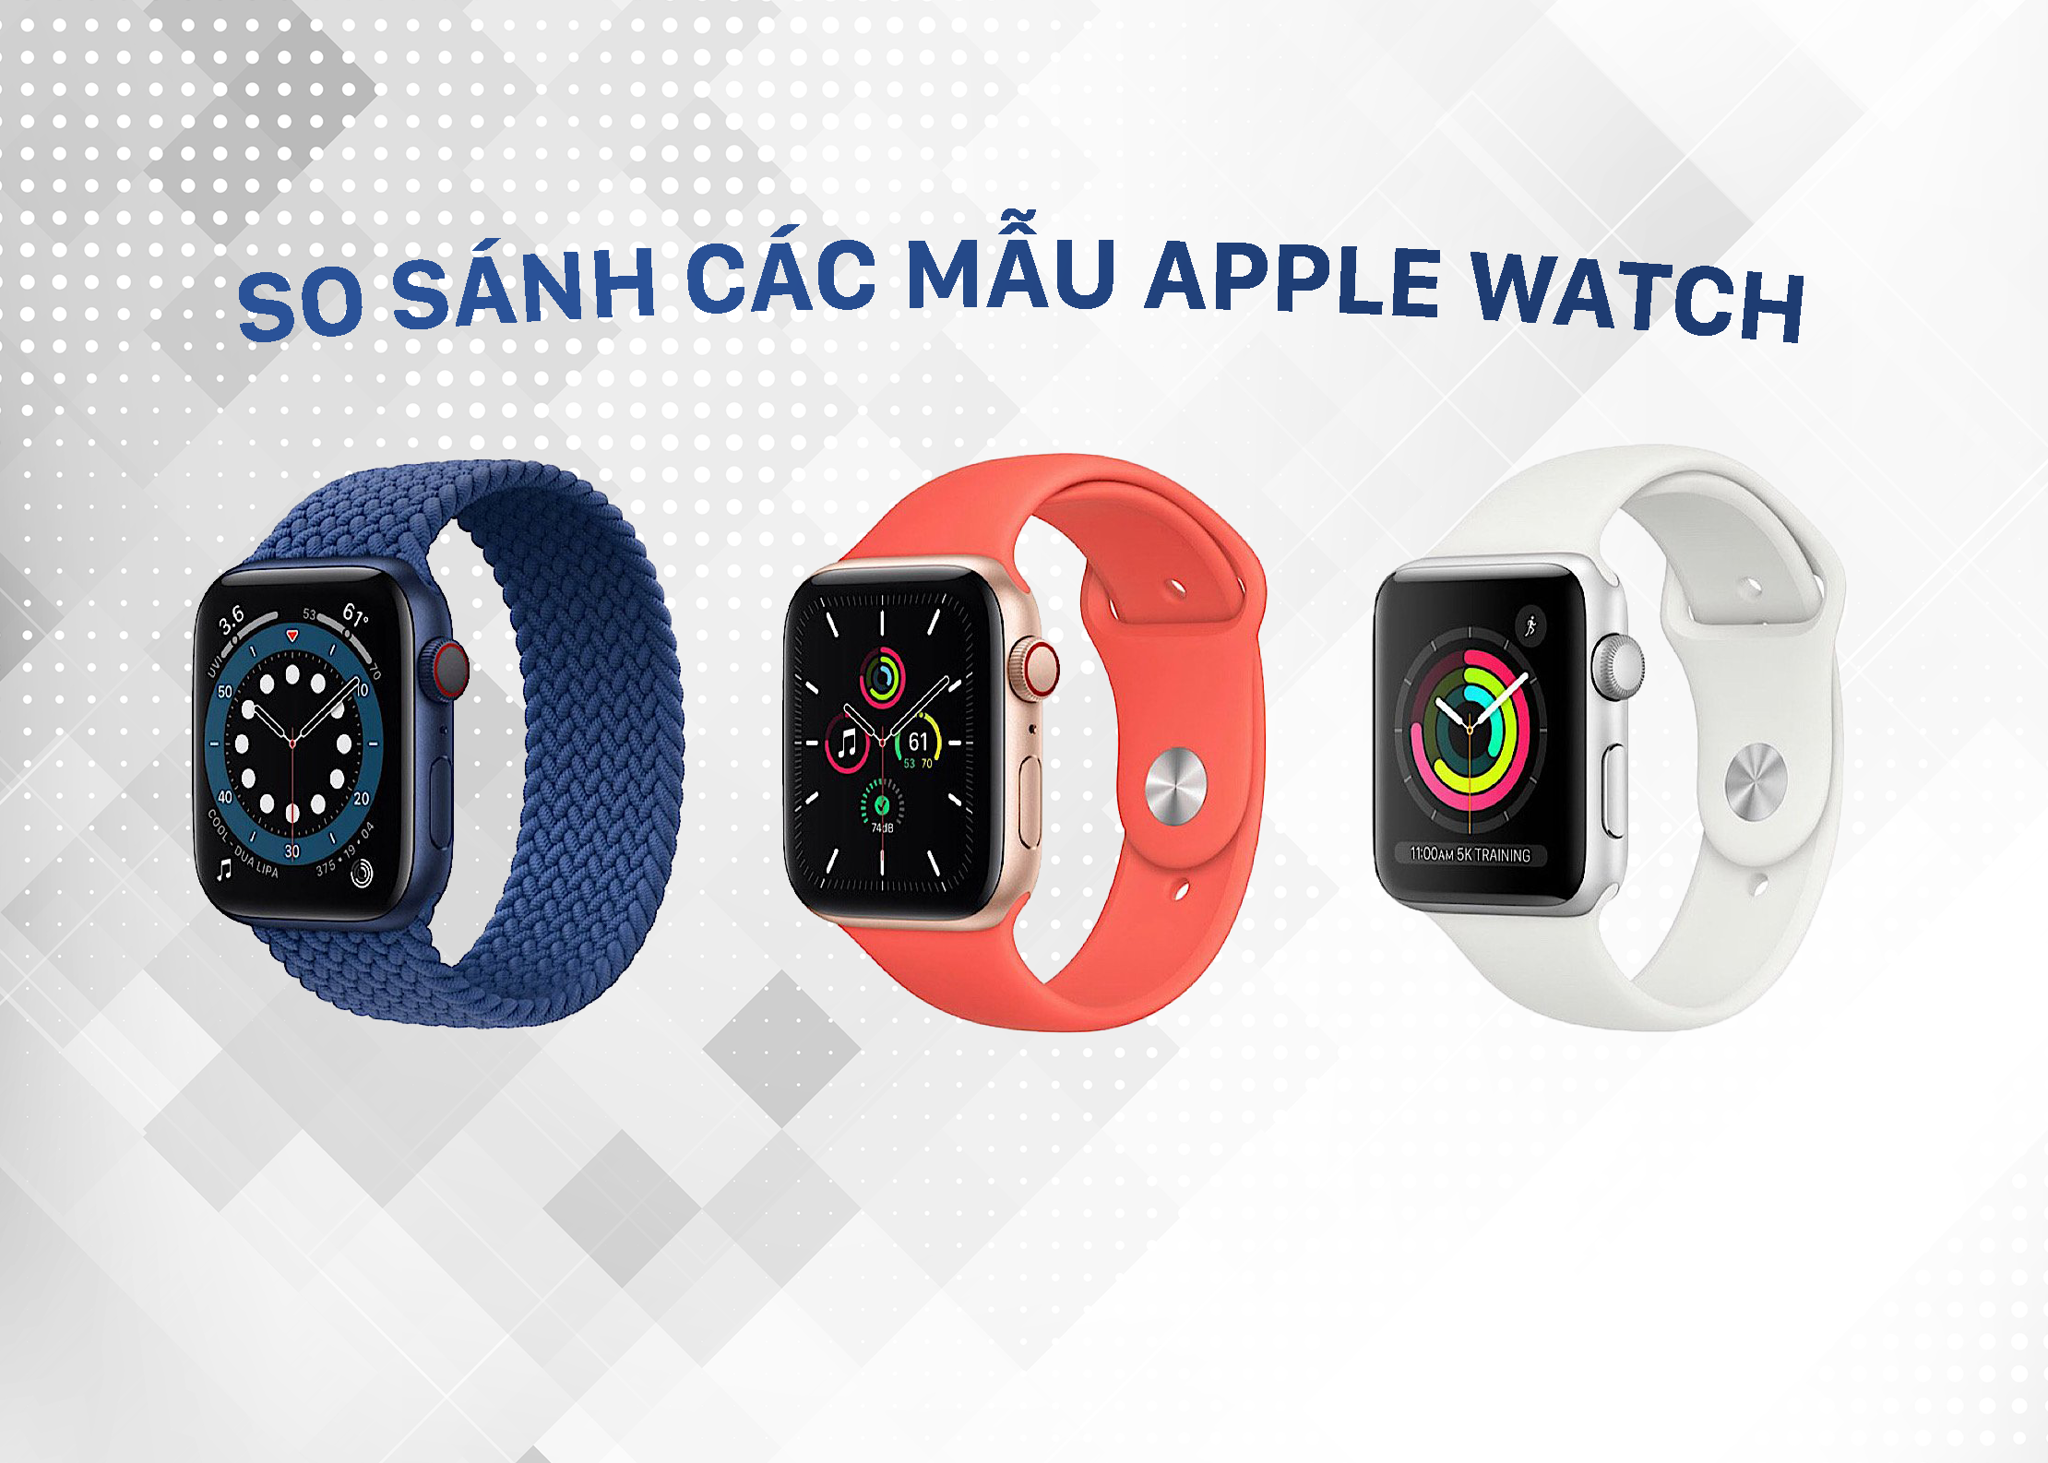 3 chiếc Apple Watch mà Apple đang bán có gì khác nhau: Apple Watch Series 6, SE và Series 3